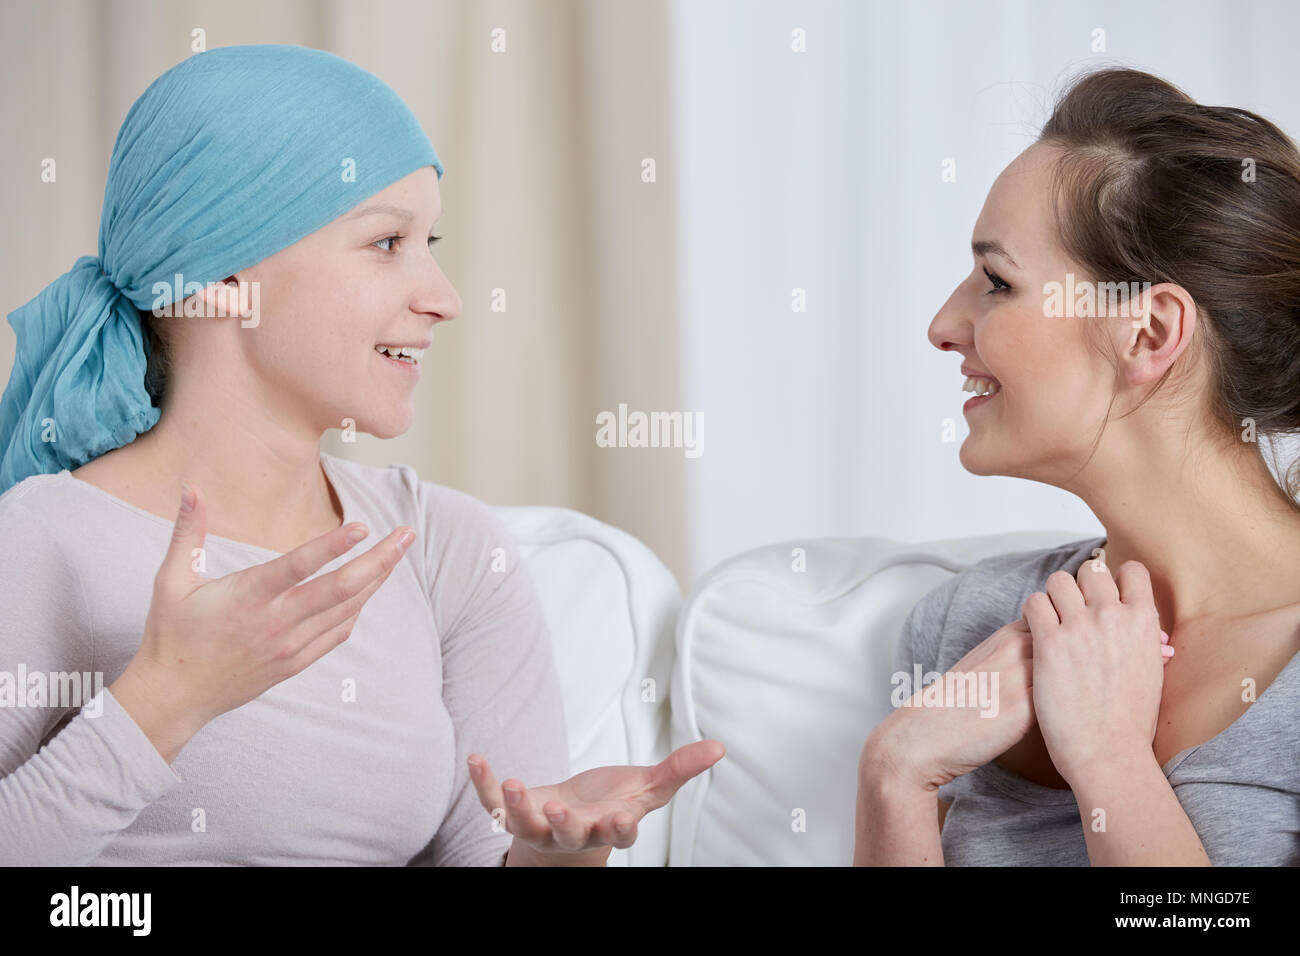 Cancer Jeune femme portant le foulard, parler avec tes amis Banque D'Images